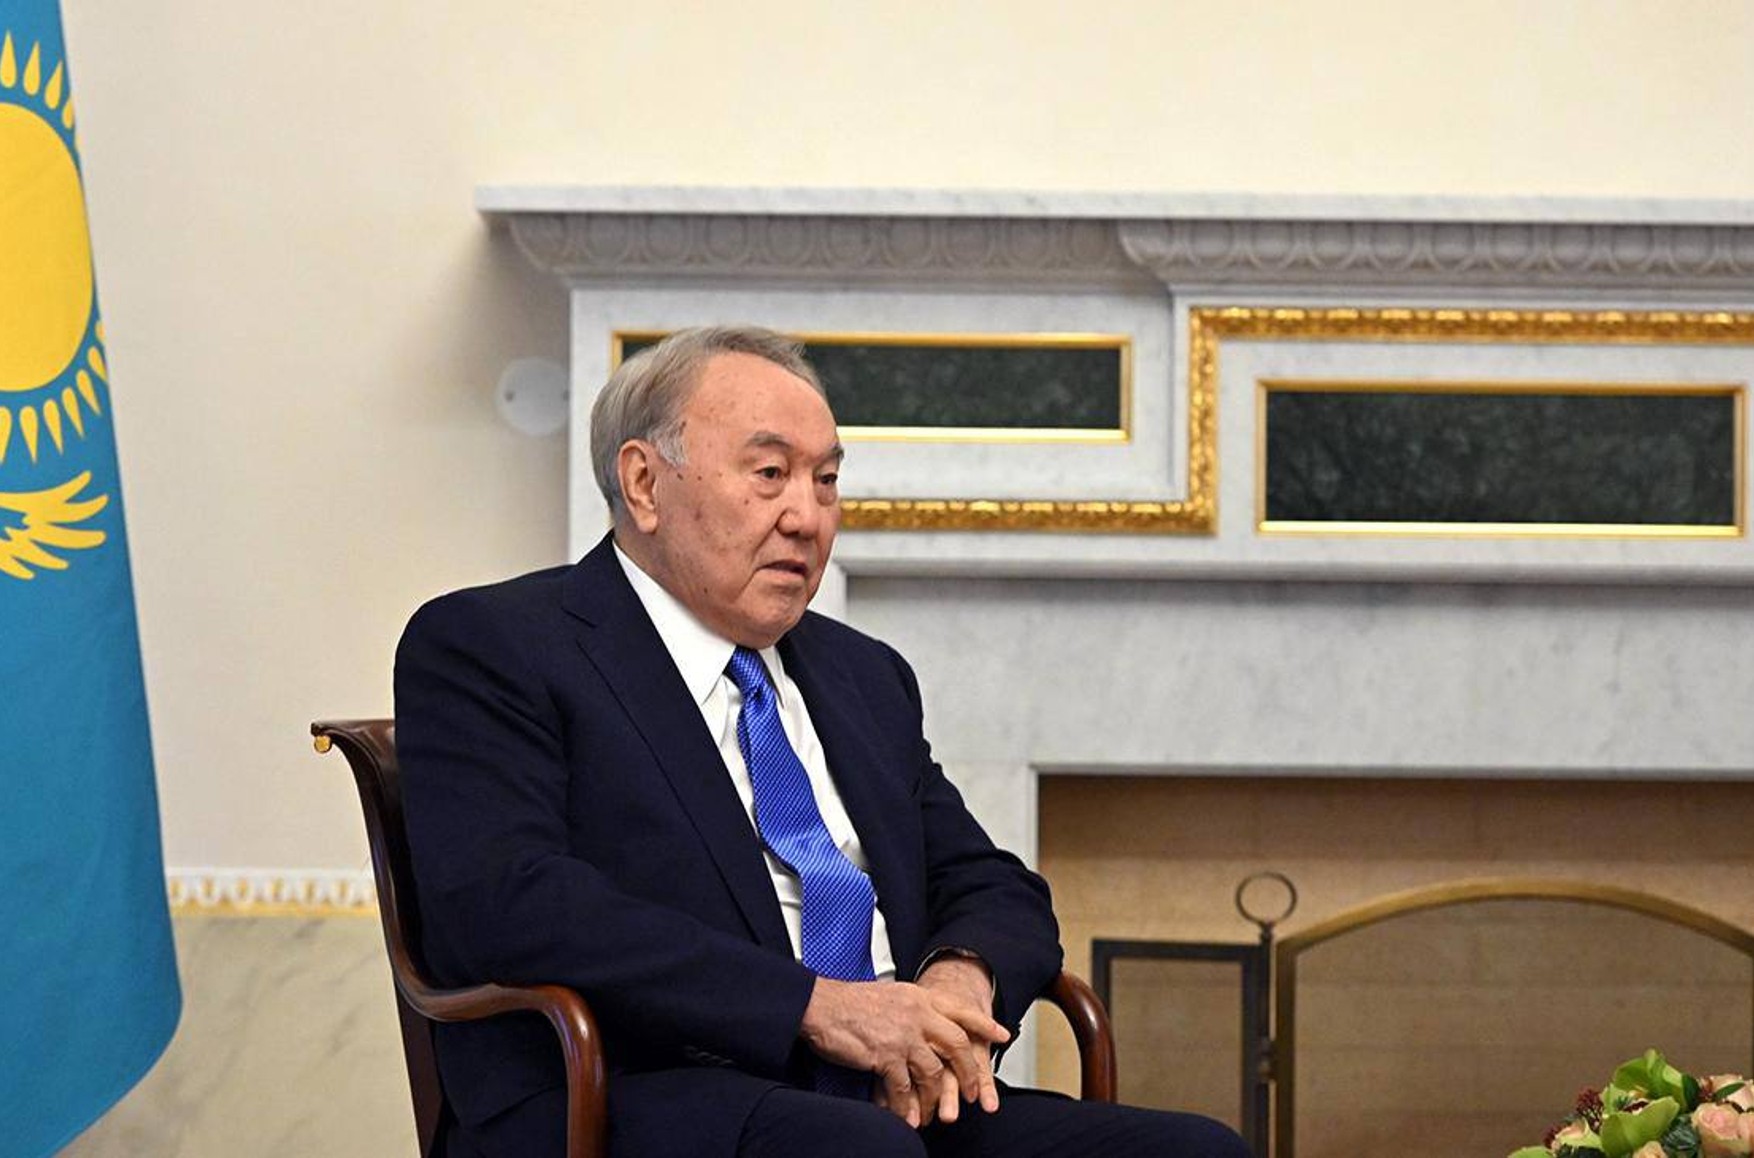 Назарбаева лишили статуса почетного сенатора Казахстана. Ранее суд отменил закон, гарантировавший ему иммунитет от преследования